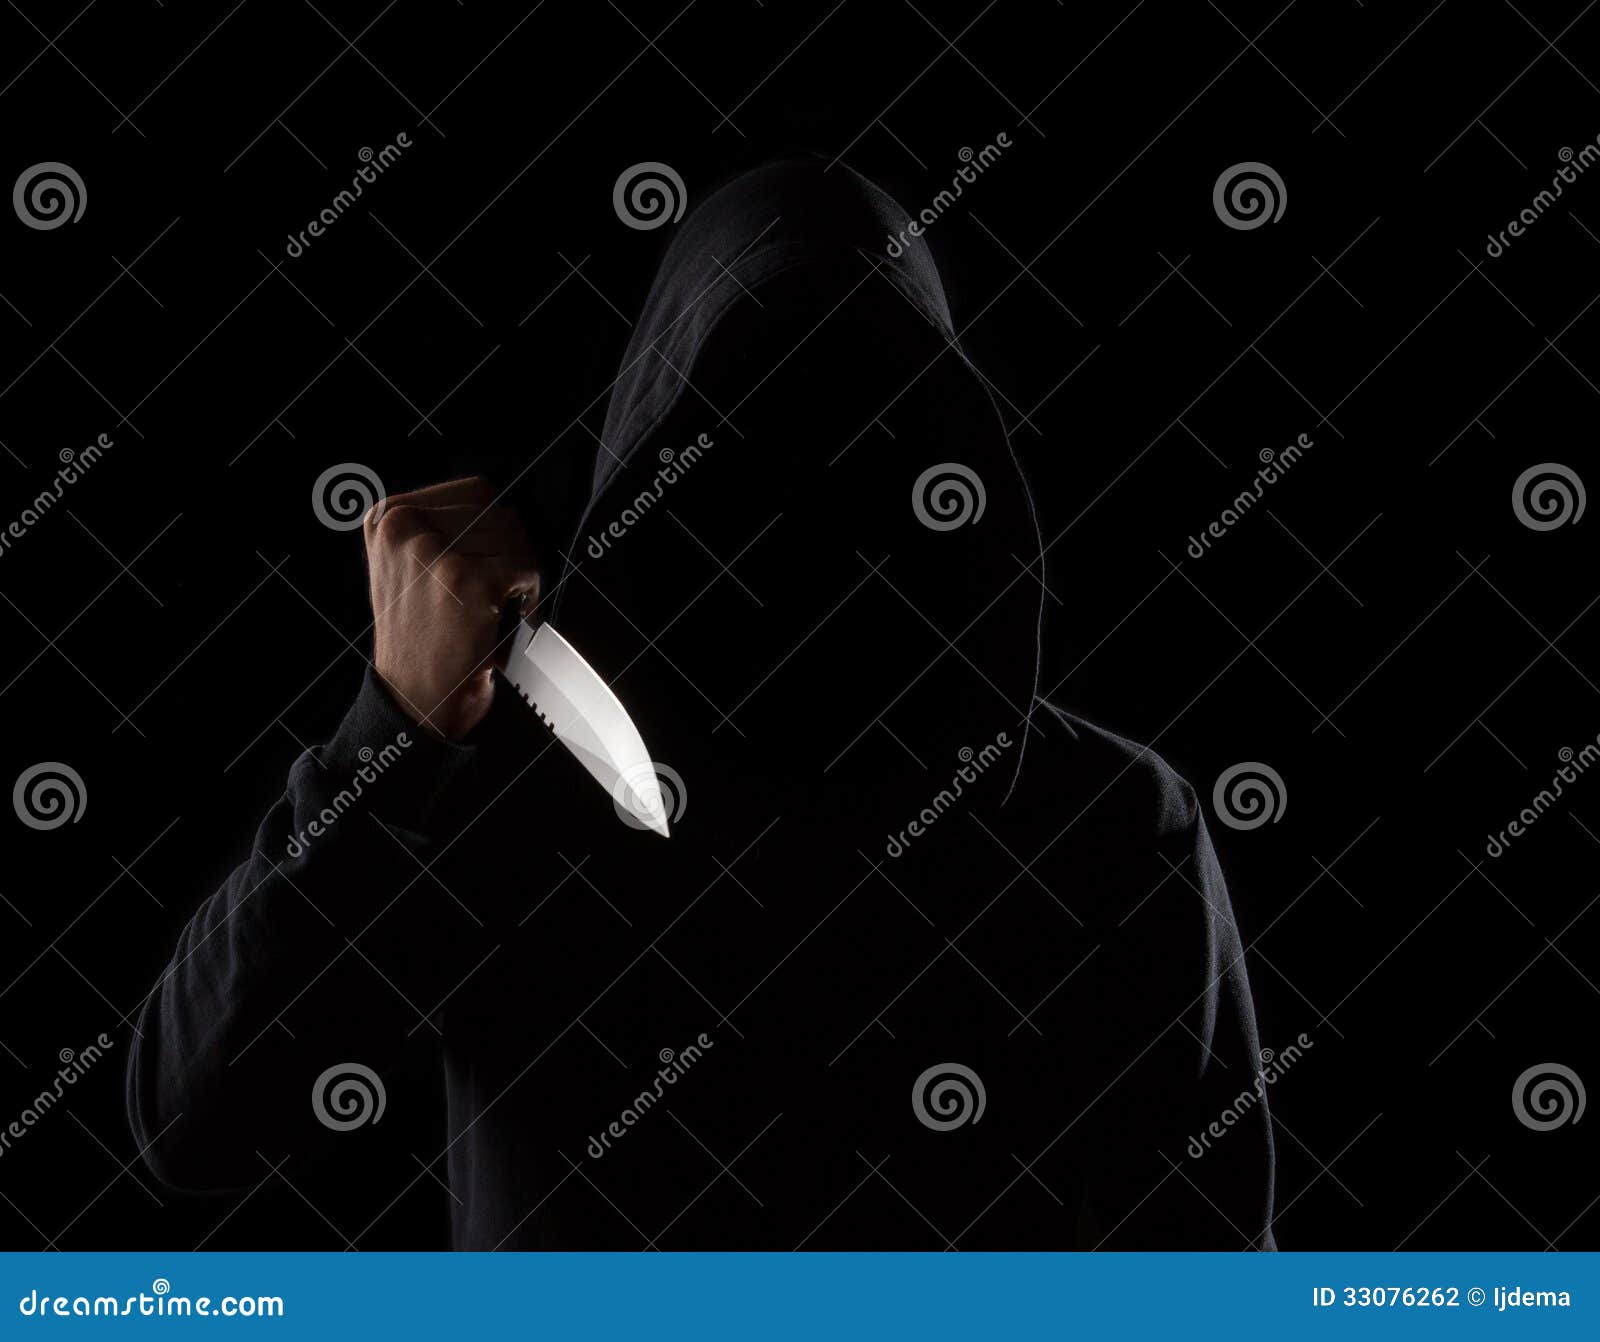 dangerous hooded man holding knife